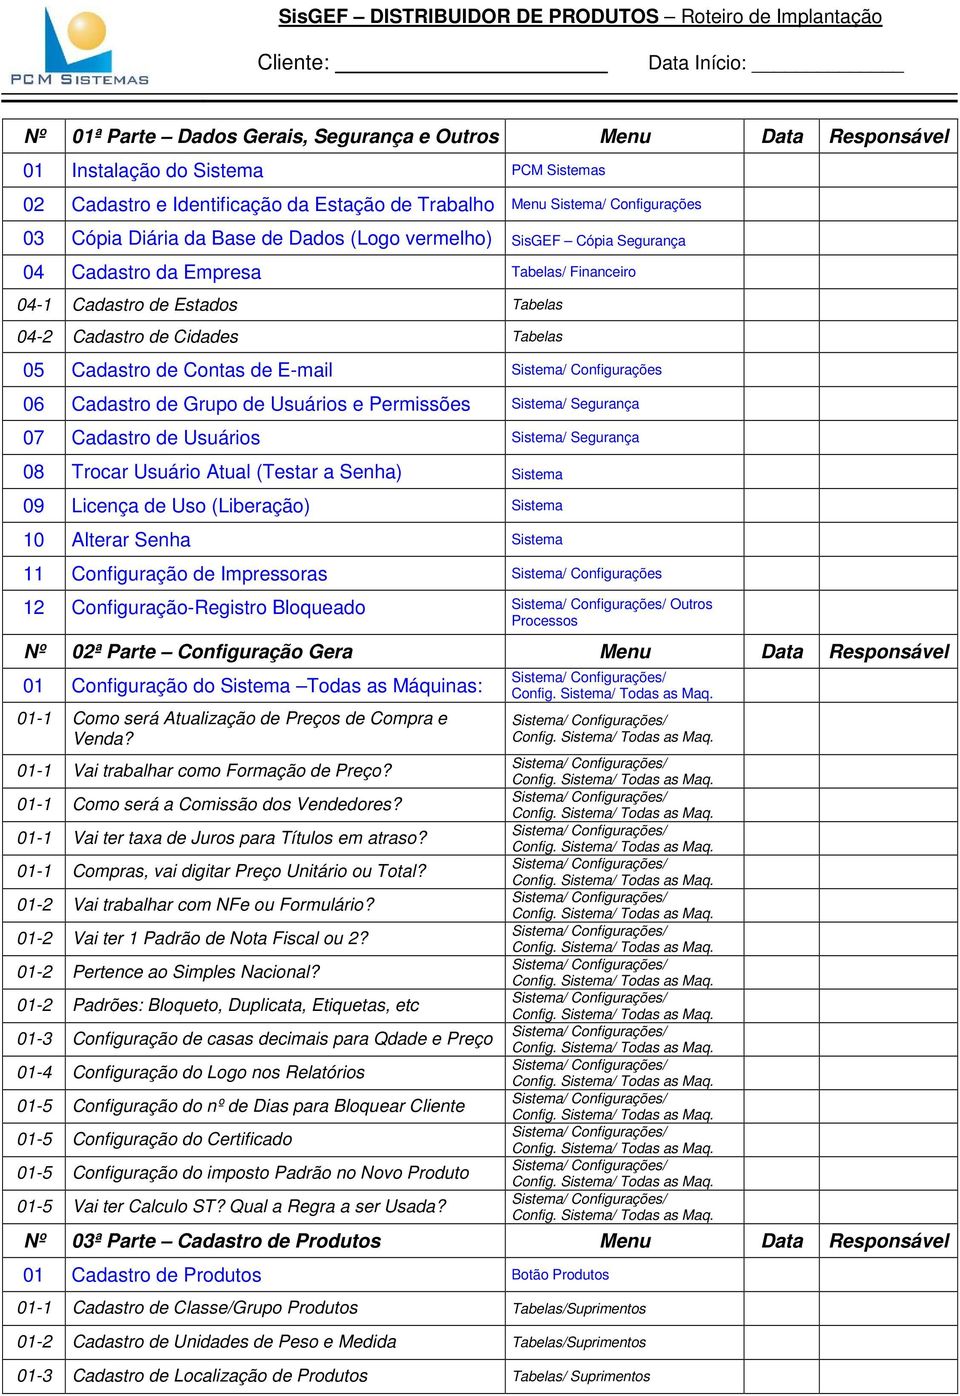 Estados Tabelas 04-2 Cadastro de Cidades Tabelas 05 Cadastro de Contas de E-mail Sistema/ Configurações 06 Cadastro de Grupo de Usuários e Permissões Sistema/ Segurança 07 Cadastro de Usuários